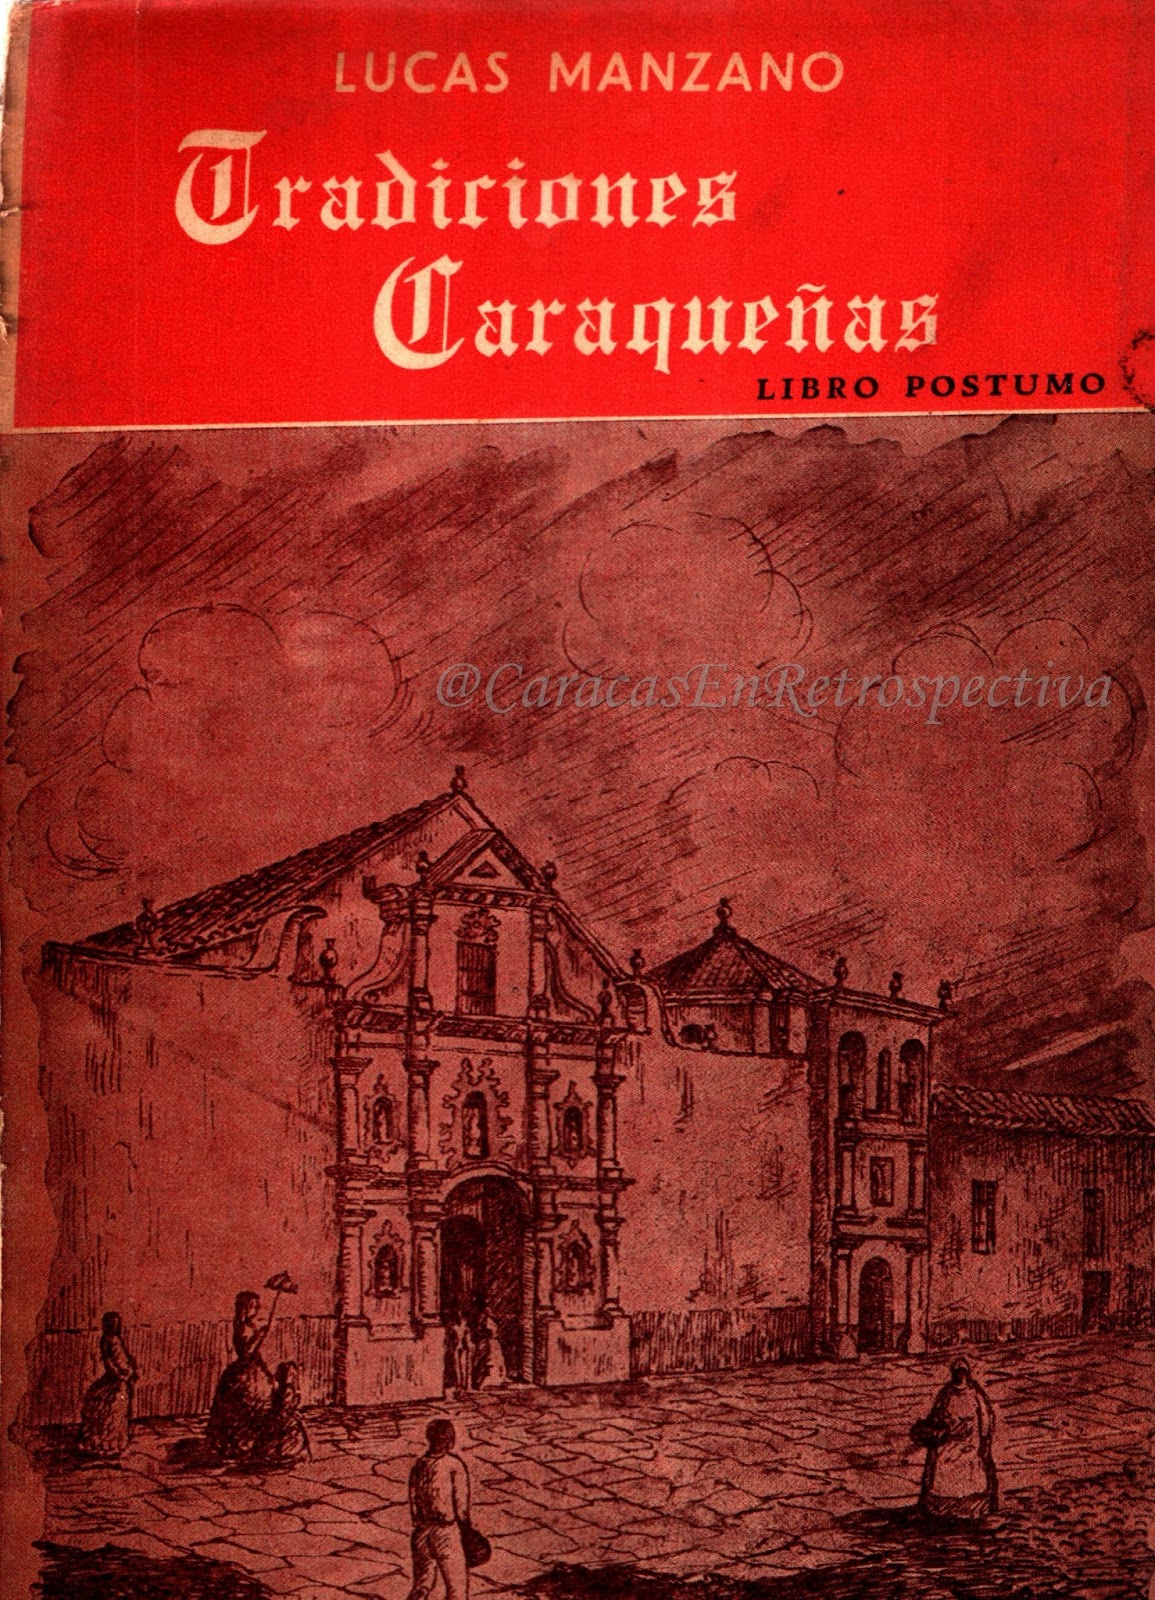 Tradiciones caraqueñas es un libro póstumo en el que se recopila gran parte de las crónicas sobre Caracas, escritas por Lucas Manzano.